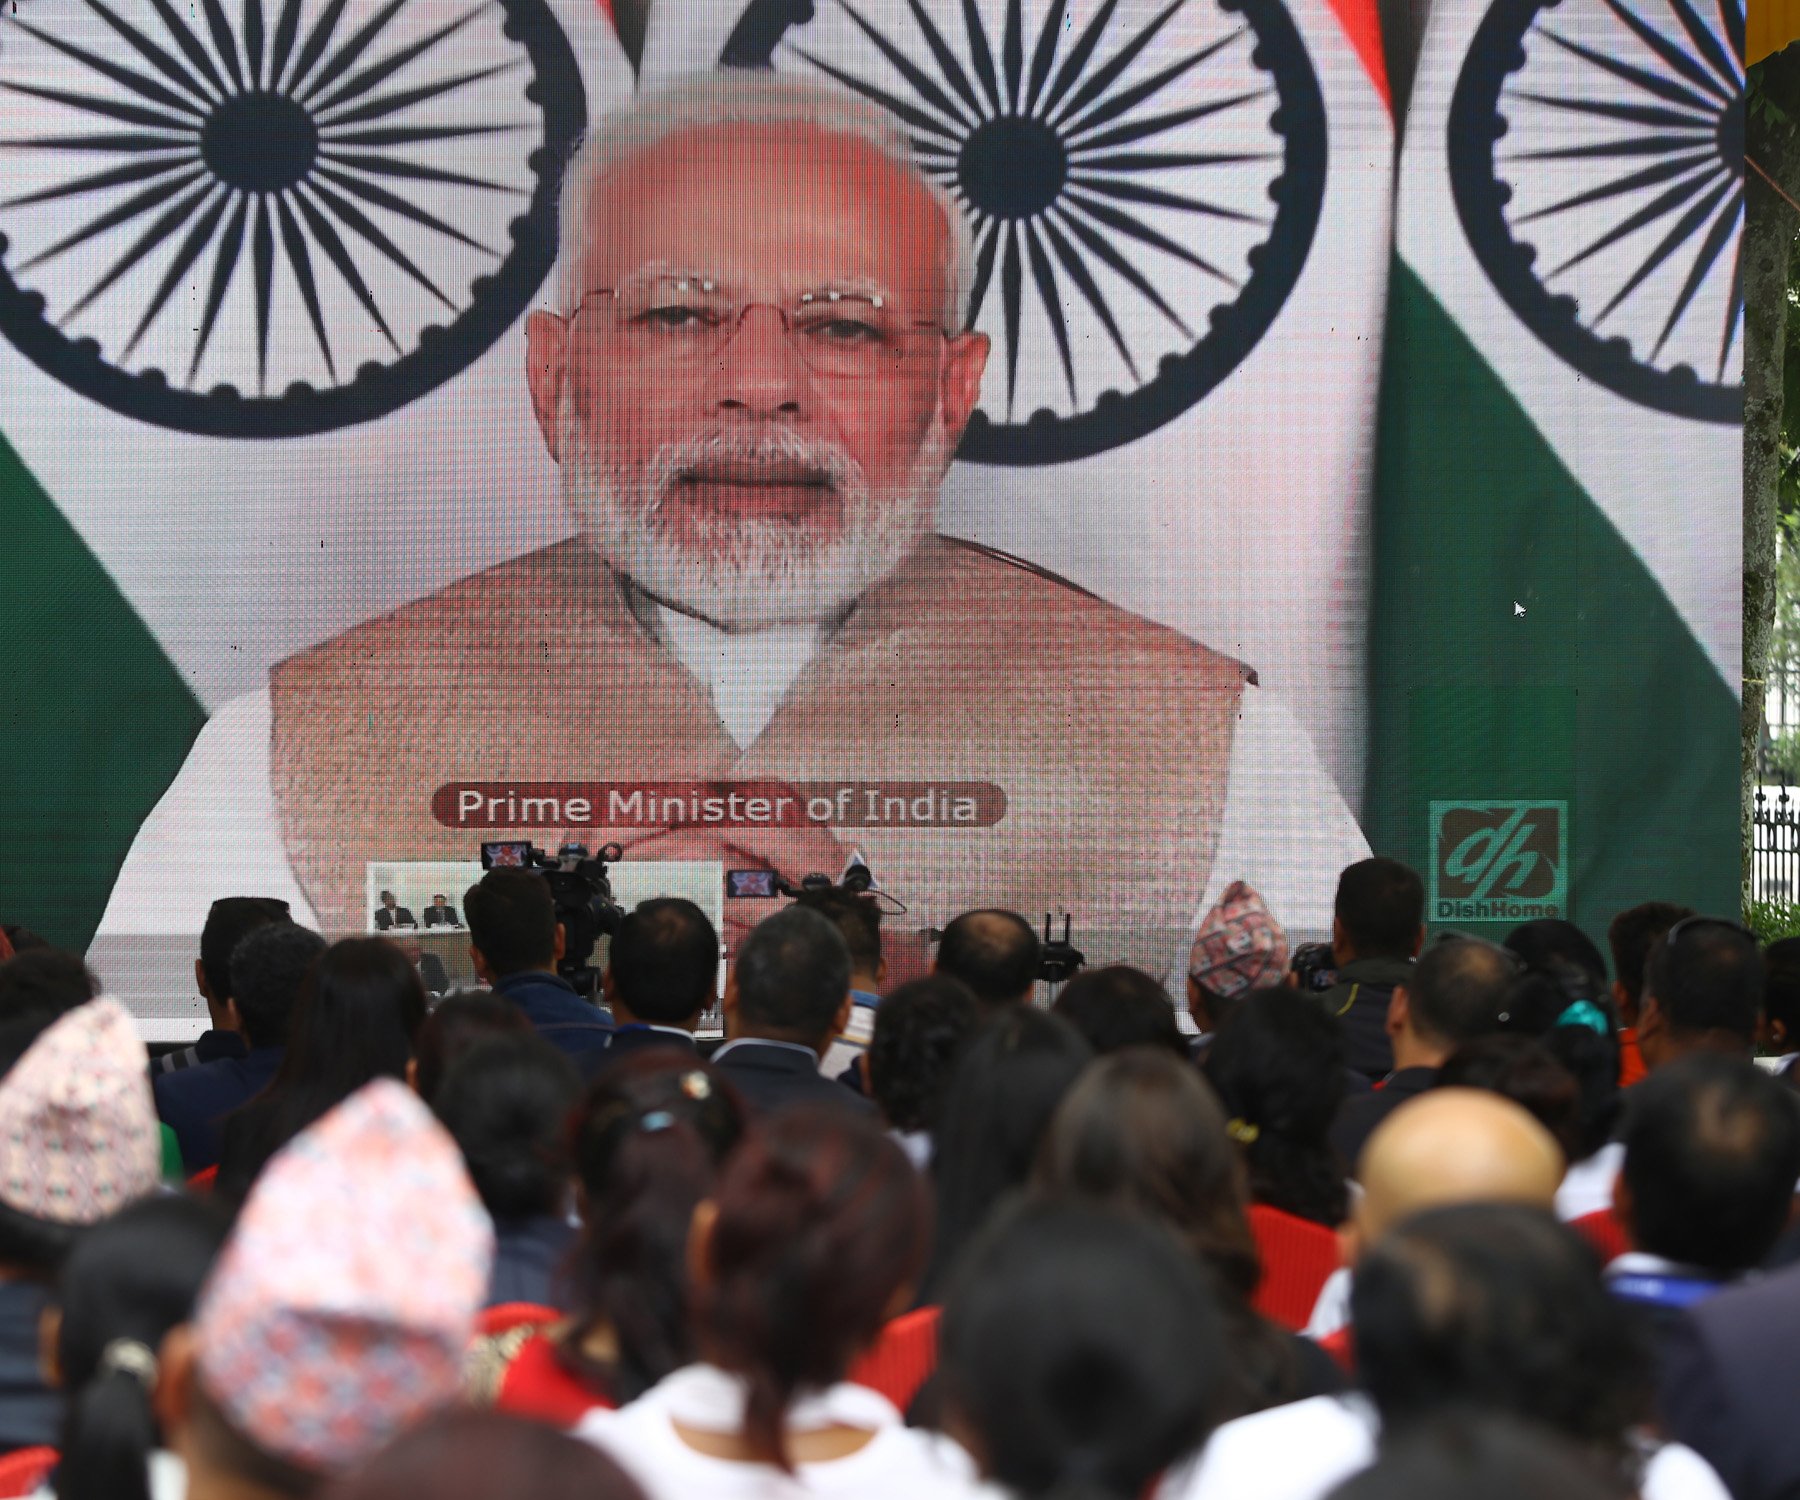 भारतीय प्रधानमन्त्री नरेन्द्र मोदीले नेपाली समकक्षीसँग संयुुक्त रुपमा मोतिहारी-अमलेखगञ्ज पेट्रोलियम पाईपलाईनको हाइटेक प्रविधिबाट उद्घाटन कार्यक्रममा।